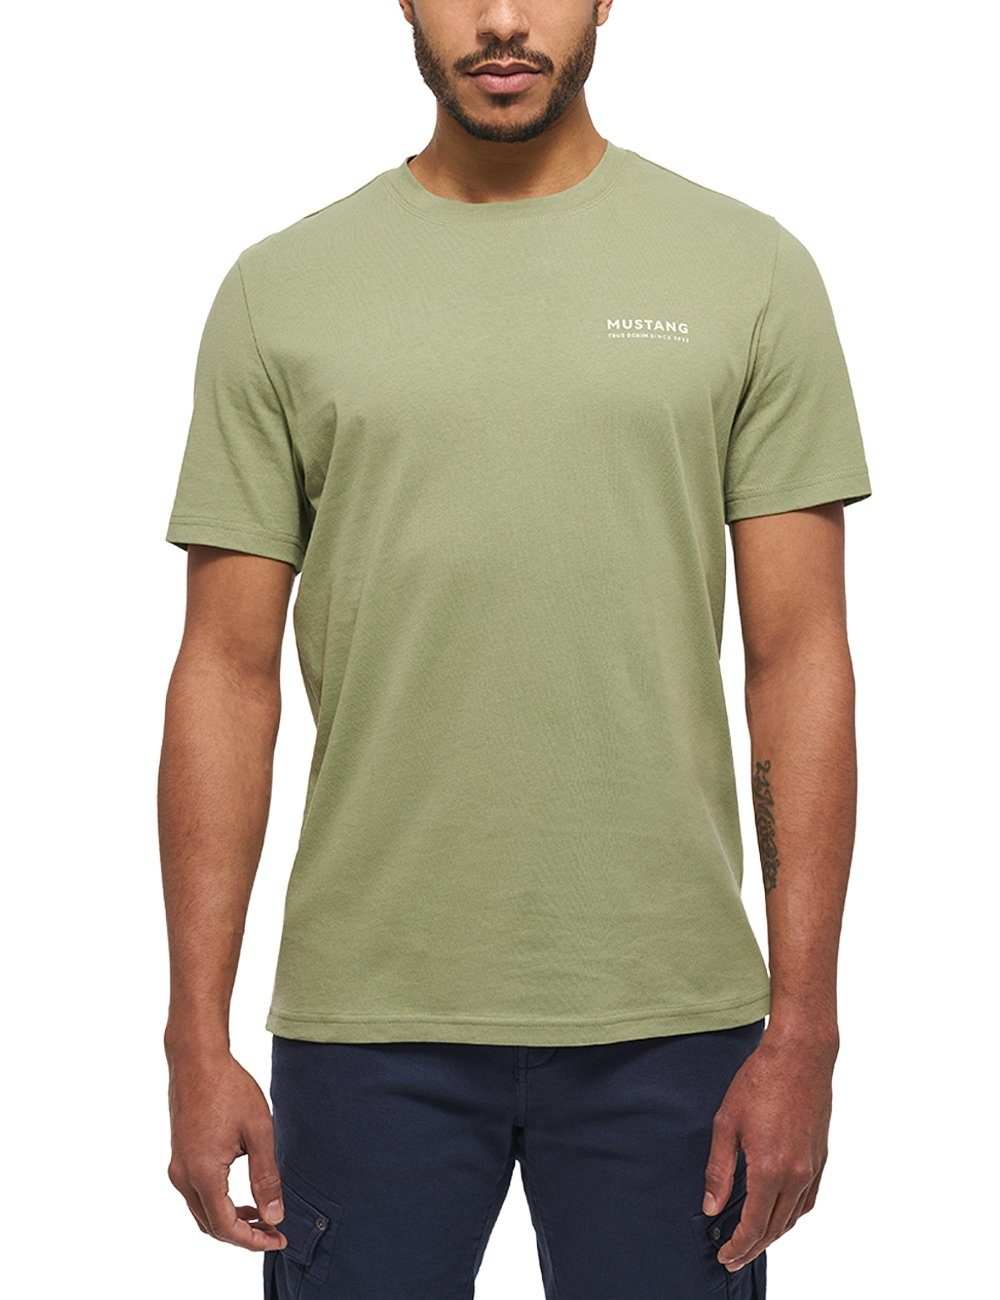 Print C T-Shirt MUSTANG Style grün Alex